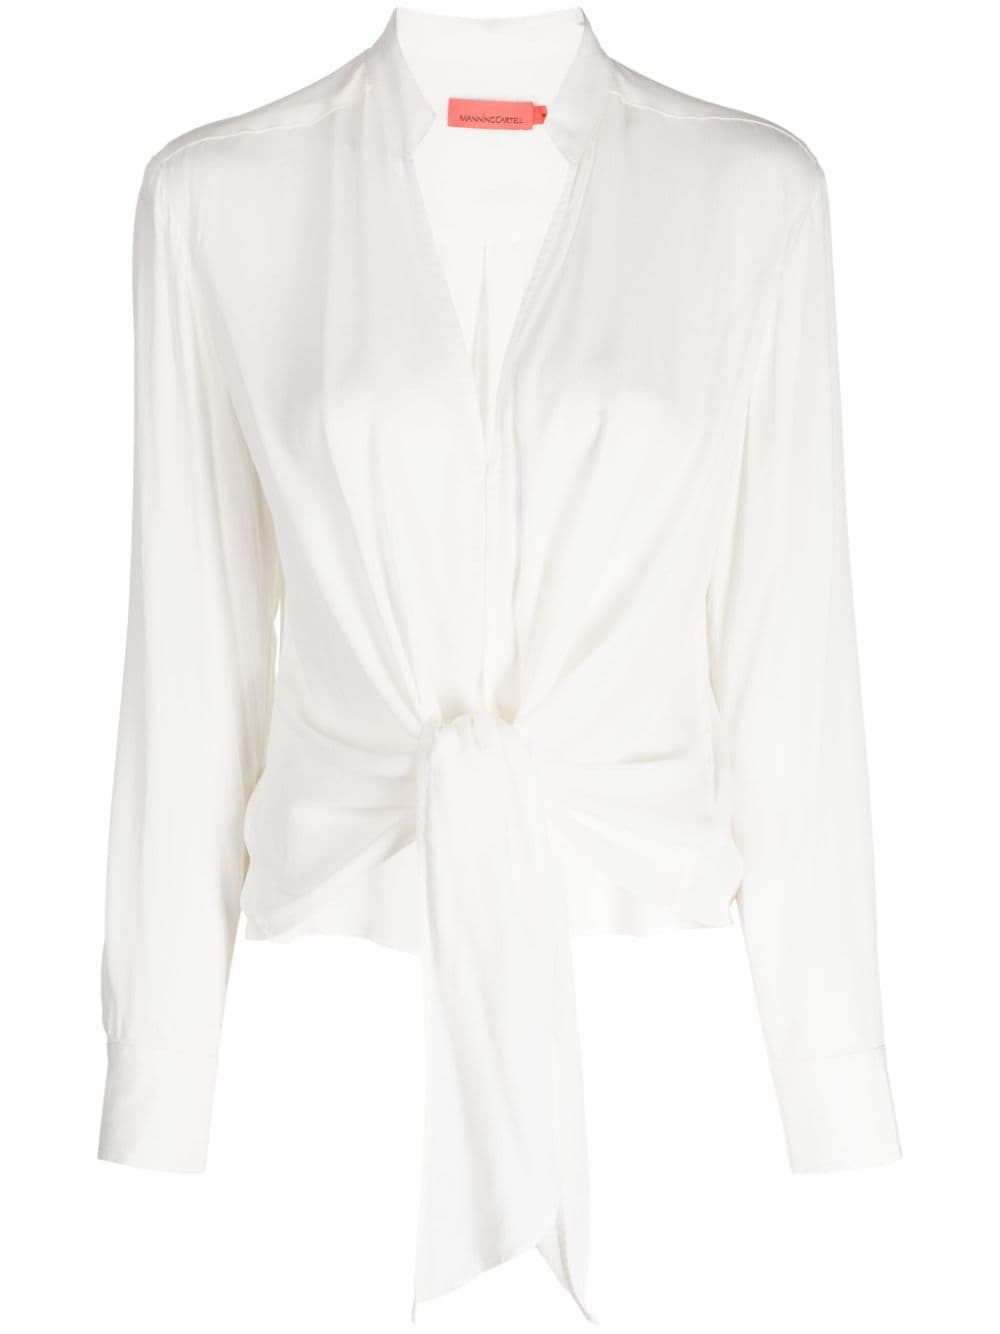 MANNING CARTELL Interplay V-neck blouse - White von MANNING CARTELL